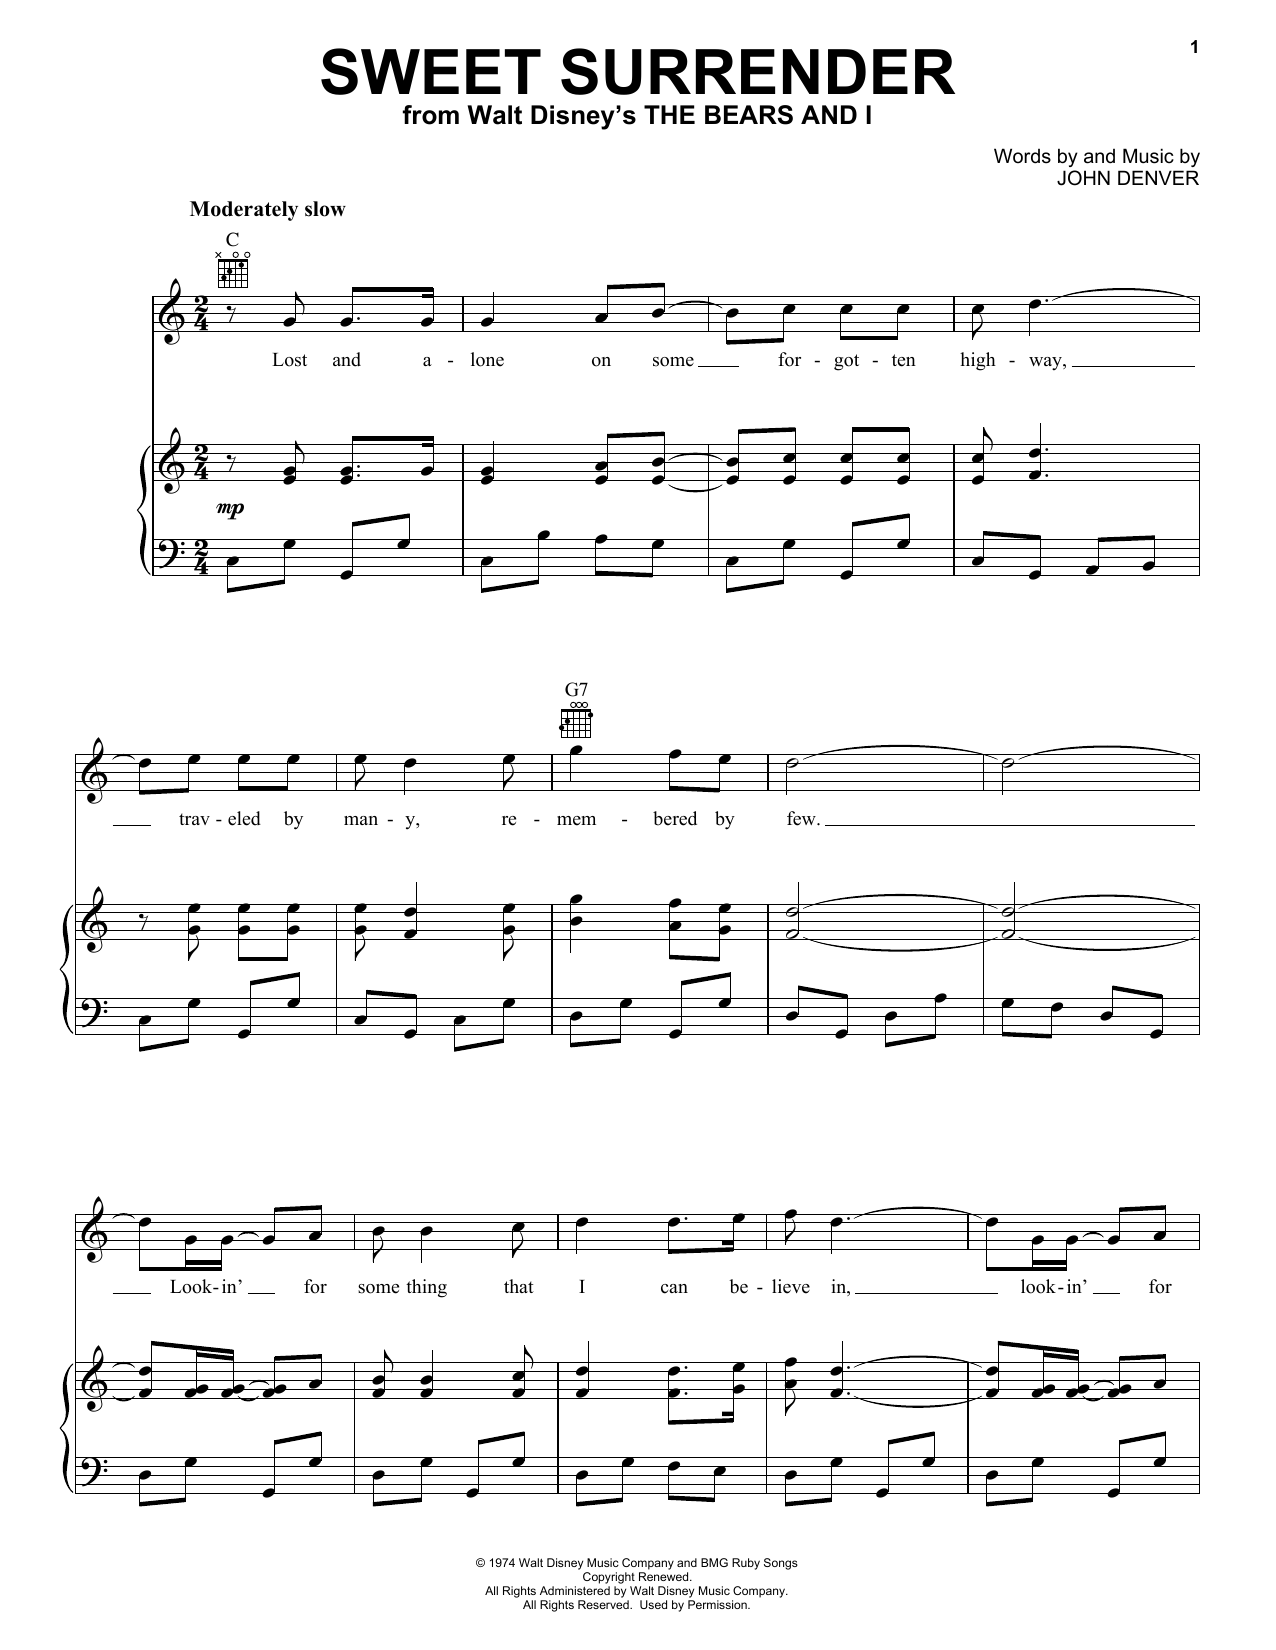 John Denver Sweet Surrender Sheet Music Notes & Chords for Melody Line, Lyrics & Chords - Download or Print PDF